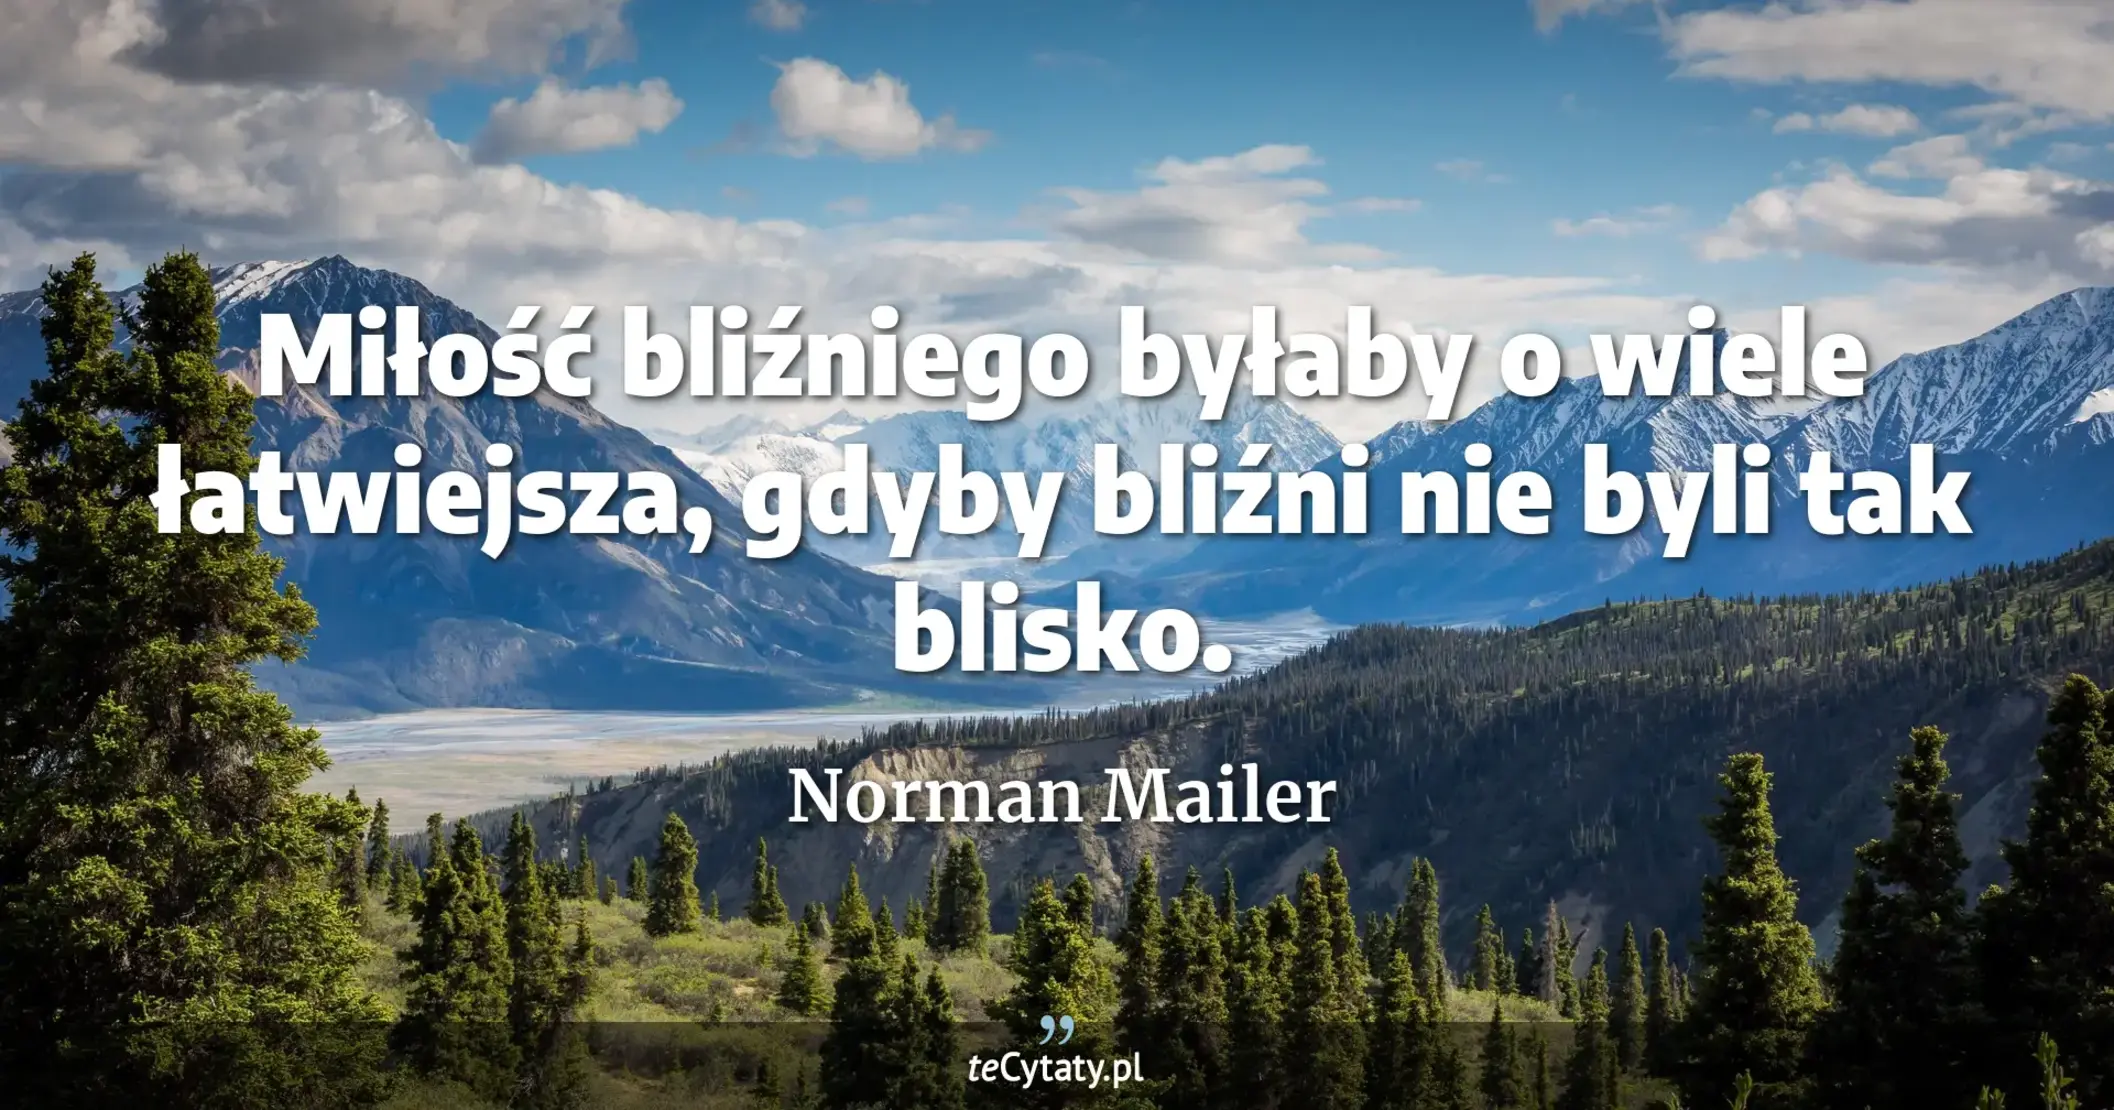 Miłość bliźniego byłaby o wiele łatwiejsza, gdyby bliźni nie byli tak blisko. - Norman Mailer